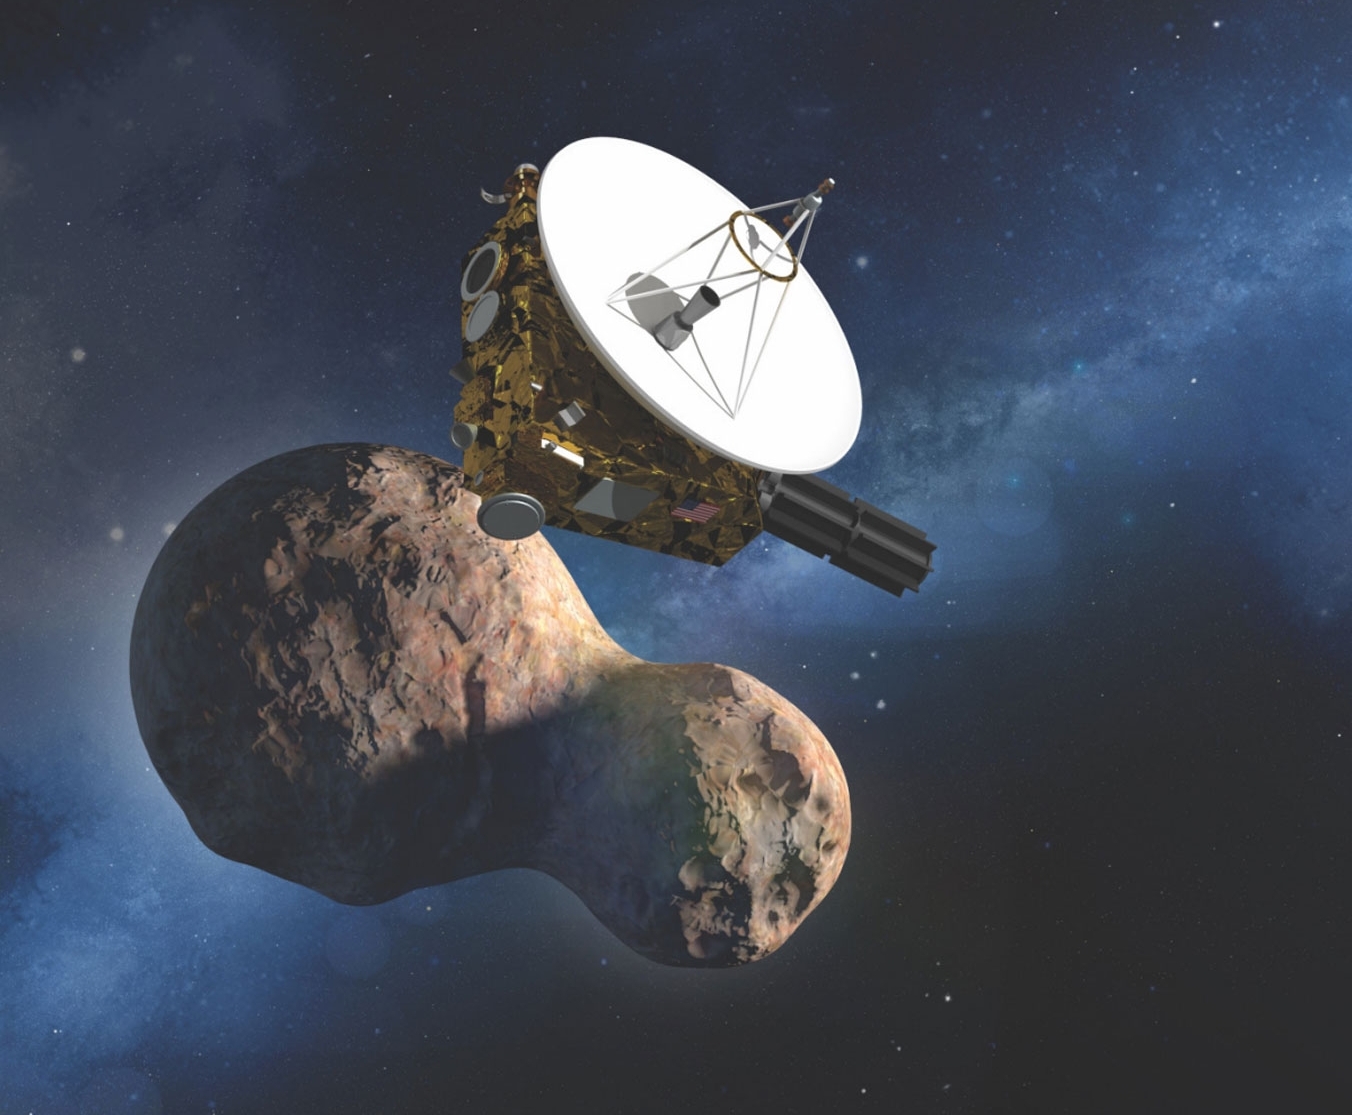 Звёздный мир, Гармония мира, станция «Новые горизонты» New Horizons, 2014 MU69 Ultima Thule, Double Asteroid Redirection Test DART, новости космоса